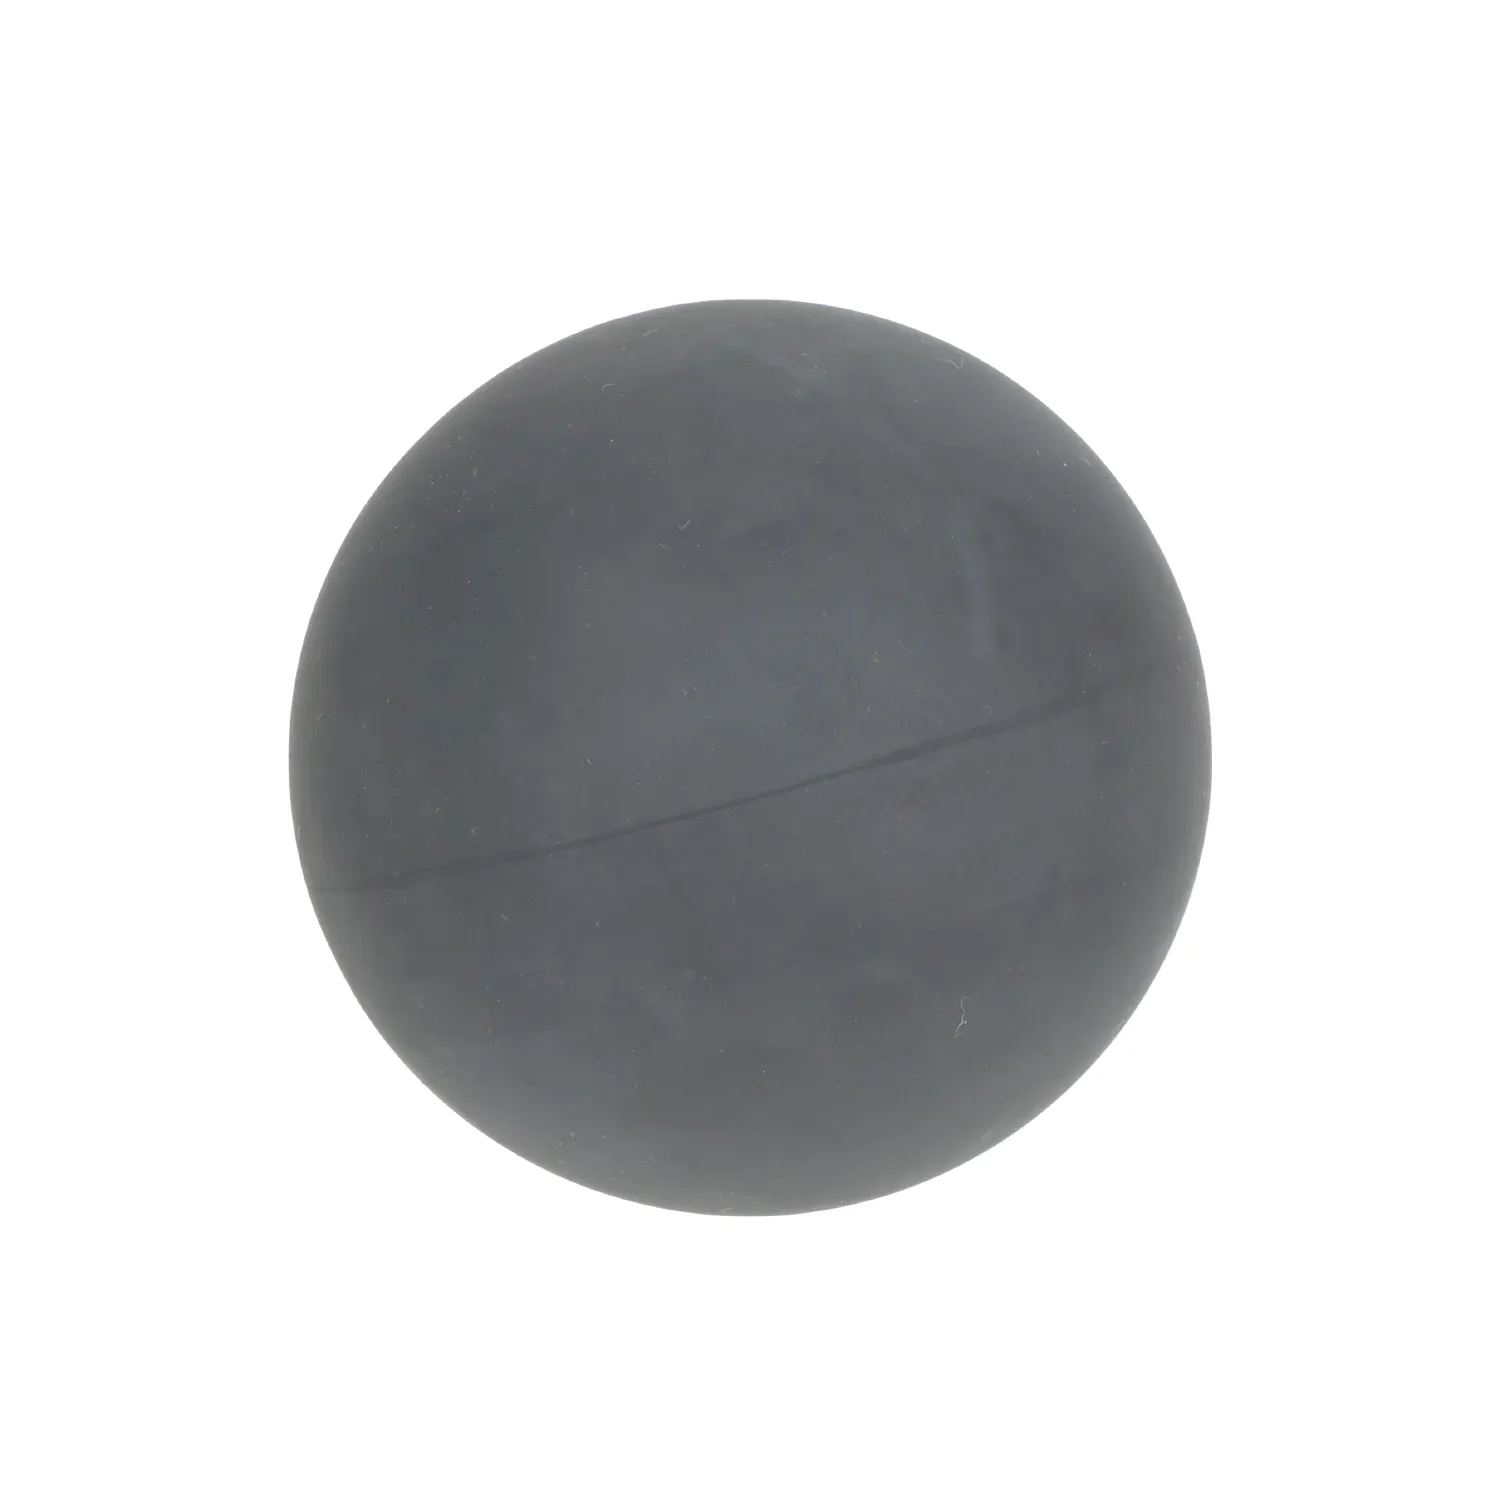 他のゴム部品メーカー深圳用のゴムと金属の結合を備えた高品質のカスタム金型シームレス固体ゴムボール